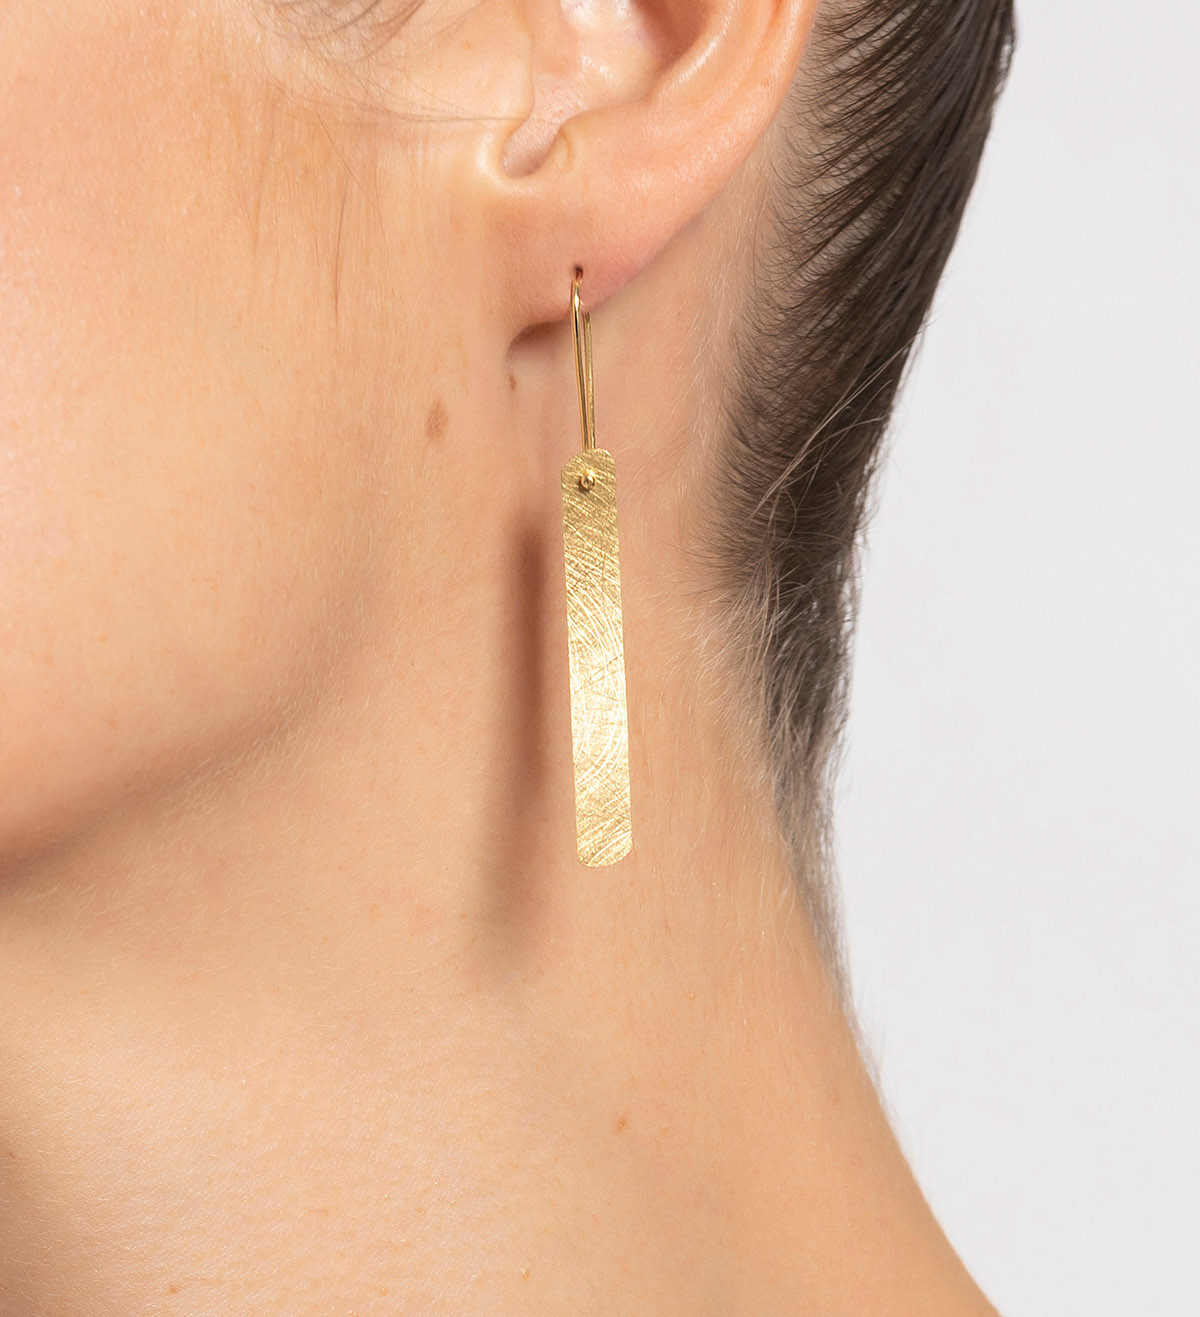 18k gold earrings Posidònia 50mm